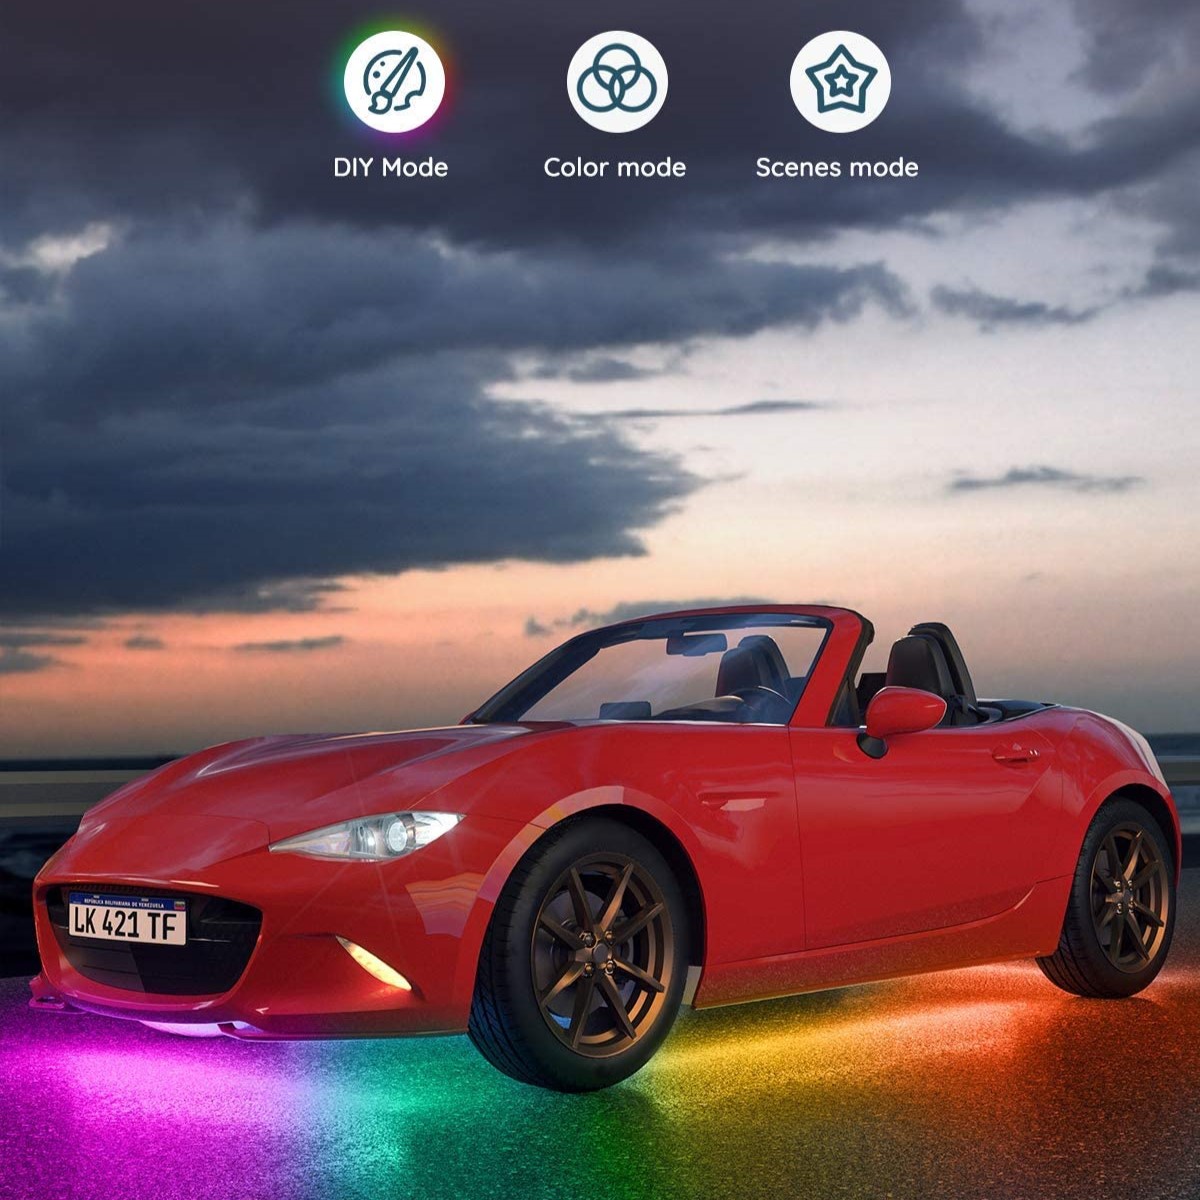 Đèn LED gầm ô tô Govee RGBIC Exterior Car Underglow Light H6184 | Kháng nước, cảm biến nhạc RGB 16 triệu màu